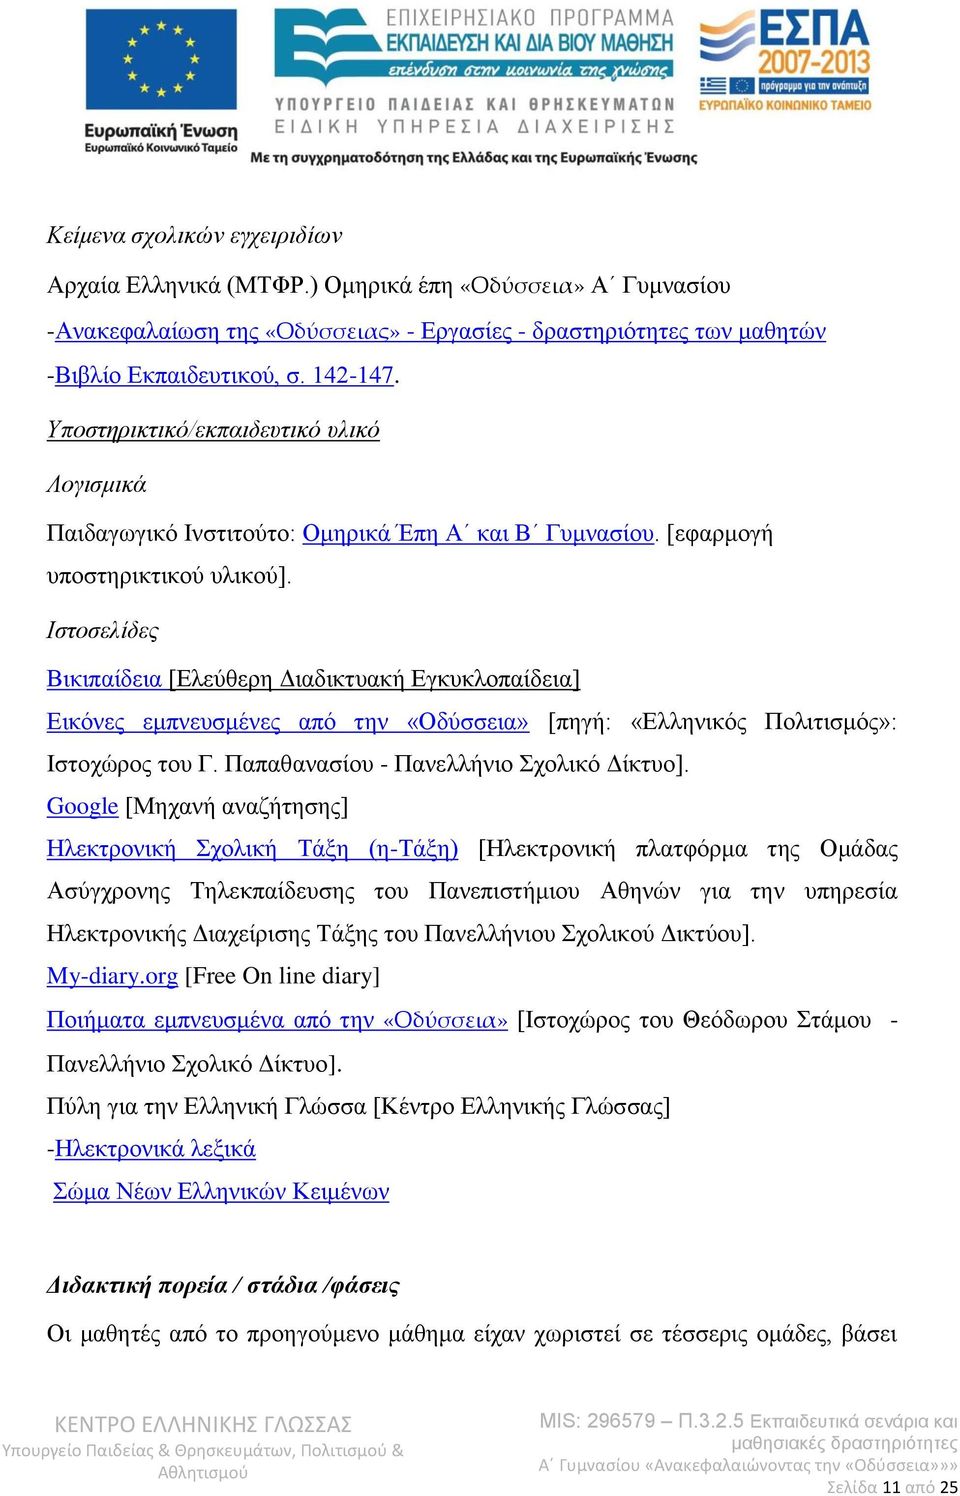 Ιστοσελίδες Βικιπαίδεια [Ελεύθερη Διαδικτυακή Εγκυκλοπαίδεια] Εικόνες εμπνευσμένες από την «Οδύσσεια» [πηγή: «Ελληνικός Πολιτισμός»: Ιστοχώρος του Γ. Παπαθανασίου - Πανελλήνιο Σχολικό Δίκτυο].